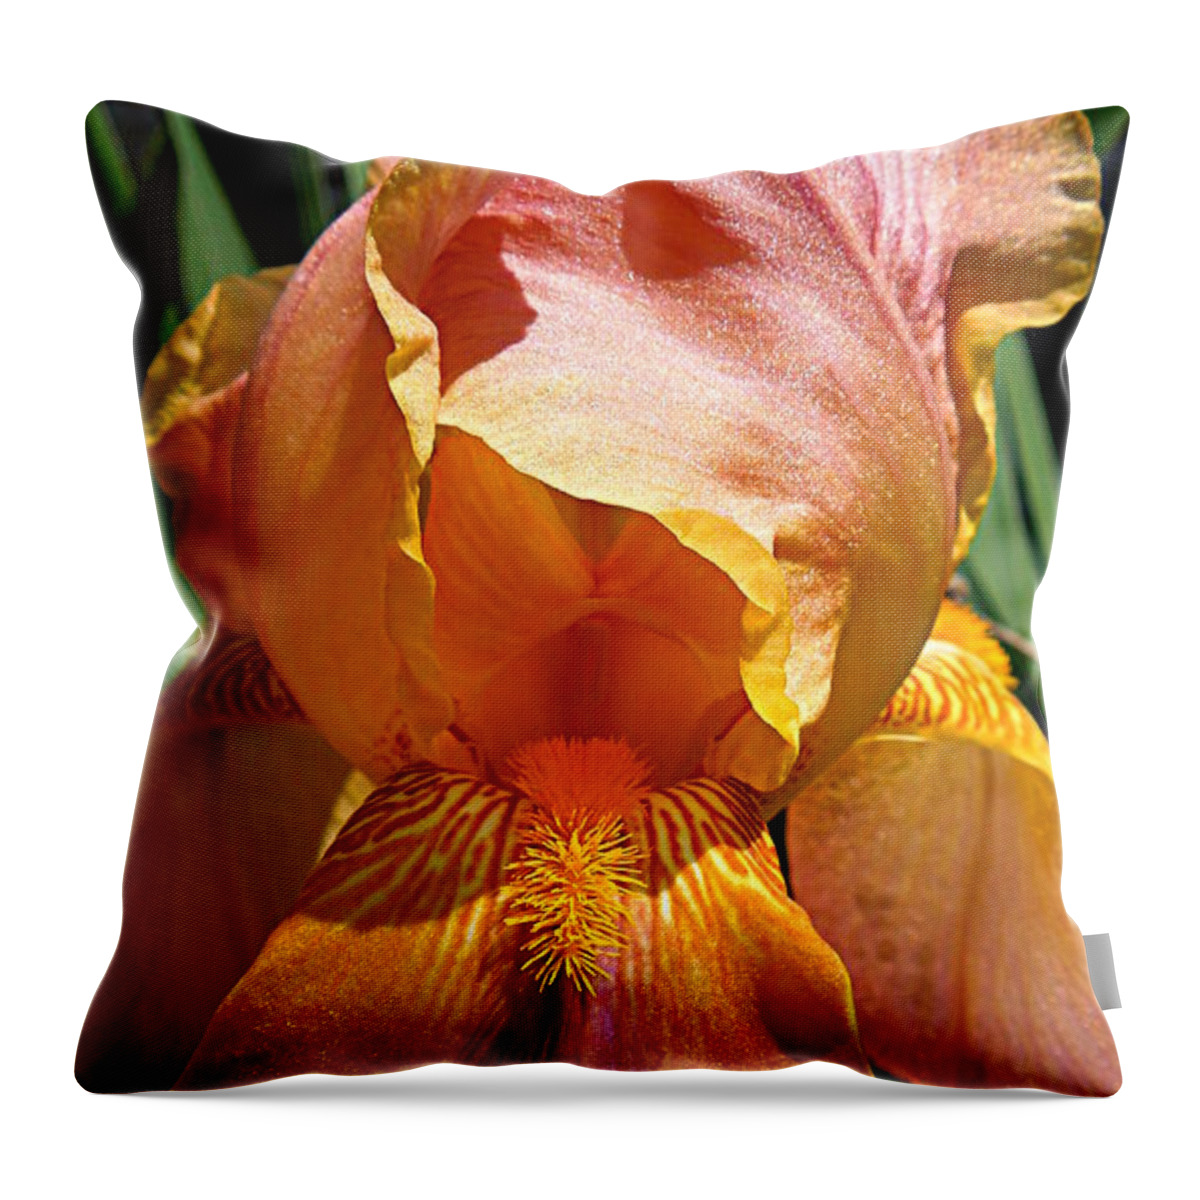 Iris Throw Pillow featuring the photograph Cajun Sunset by Renee Trenholm